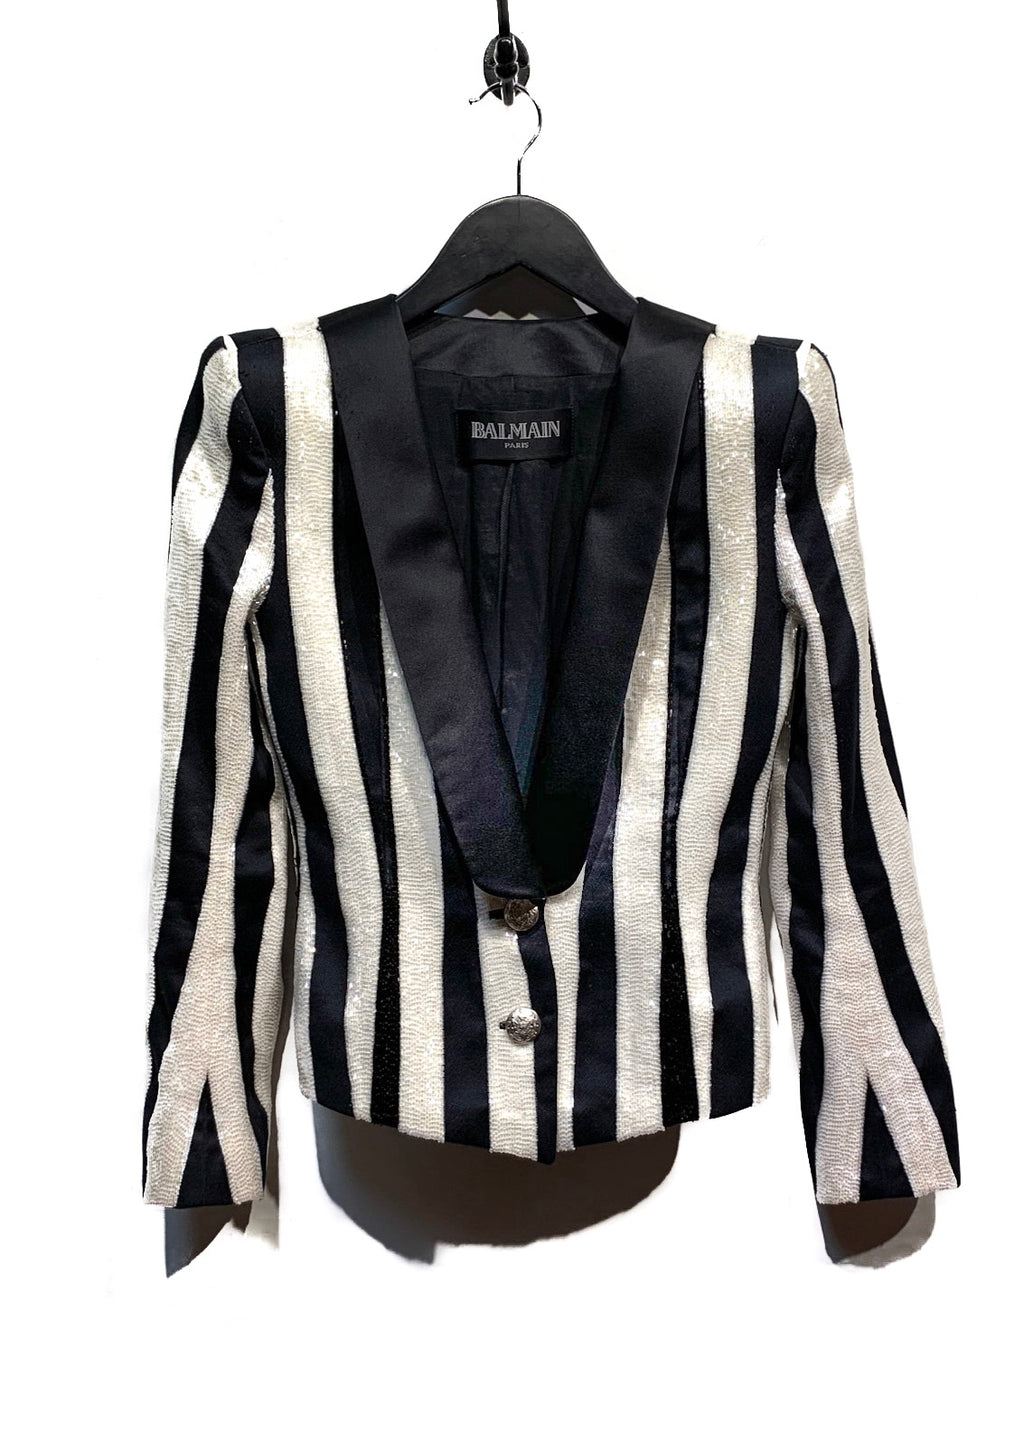 Balmain Black and White Beaded Embellish Tuxedo Jacket